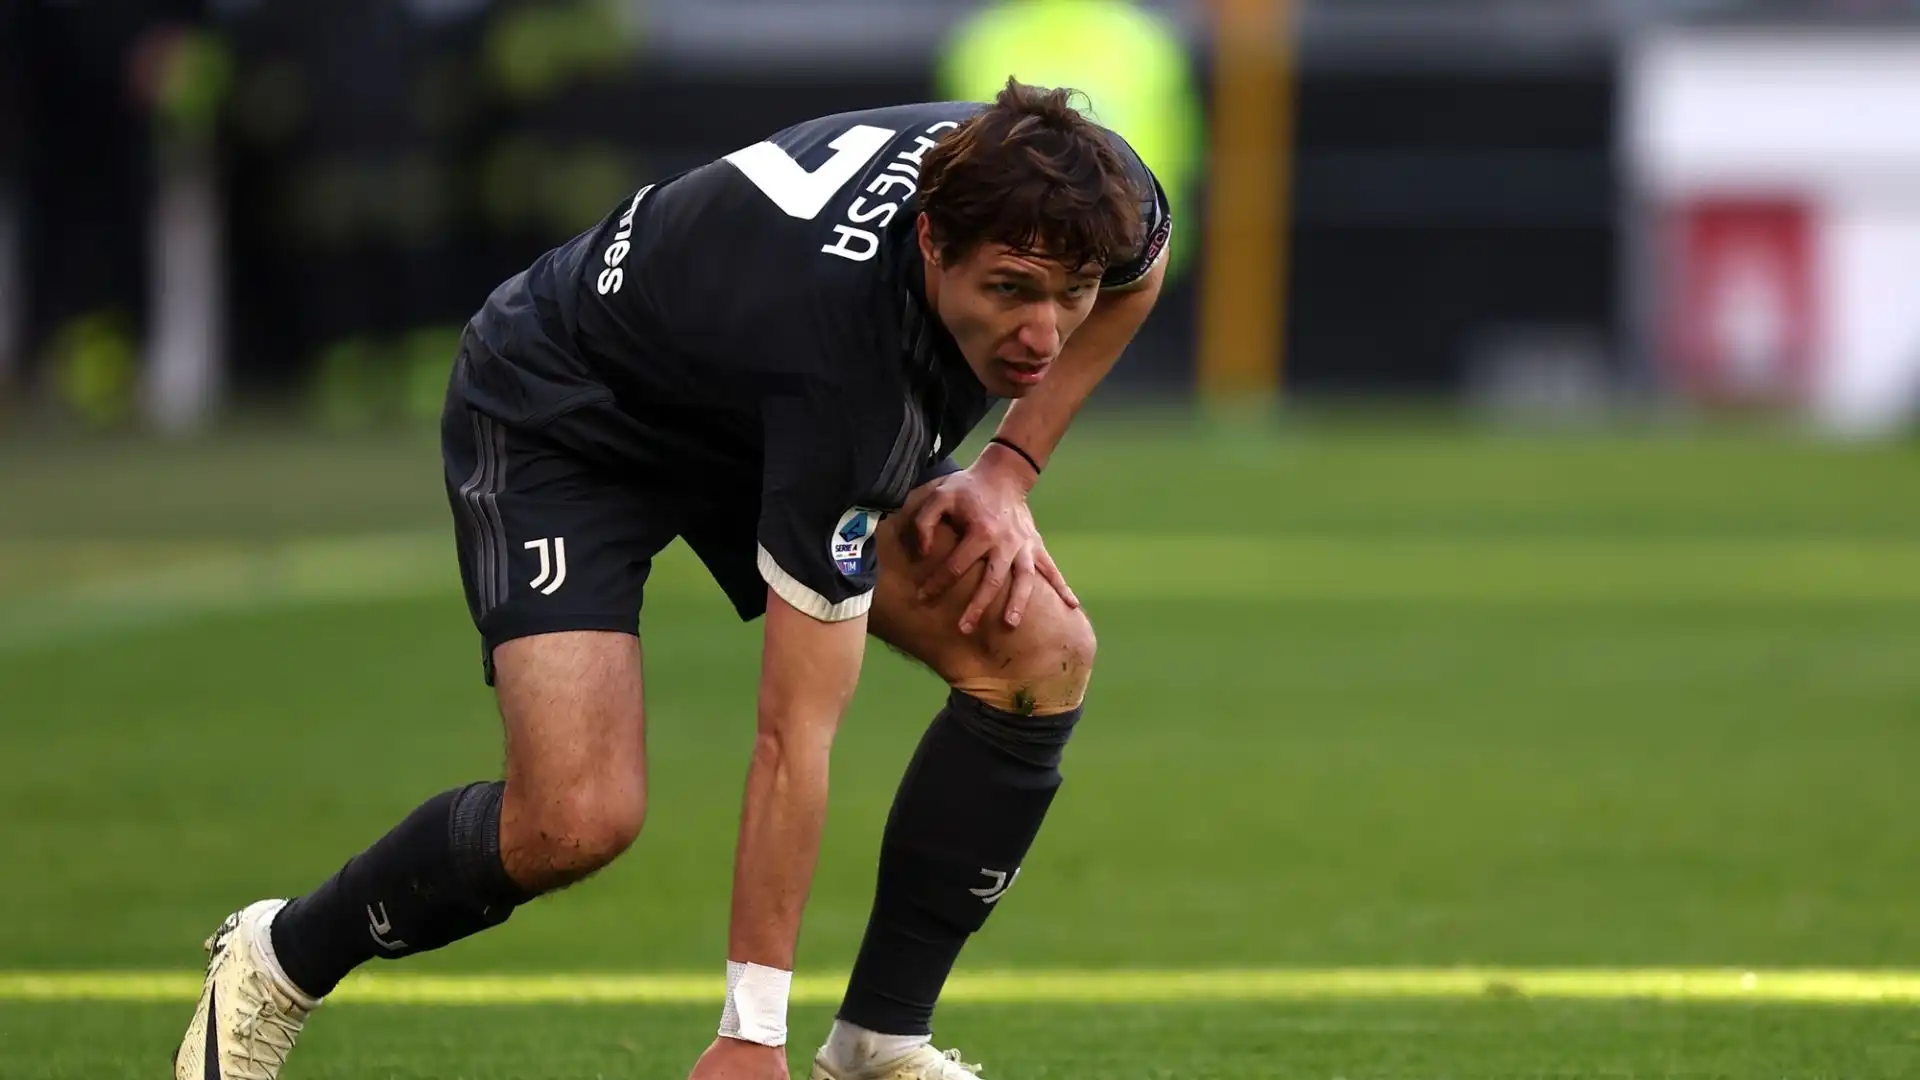 L'attaccante della Juventus è stato costretto ad interrompere l'allenamento di mercoledì